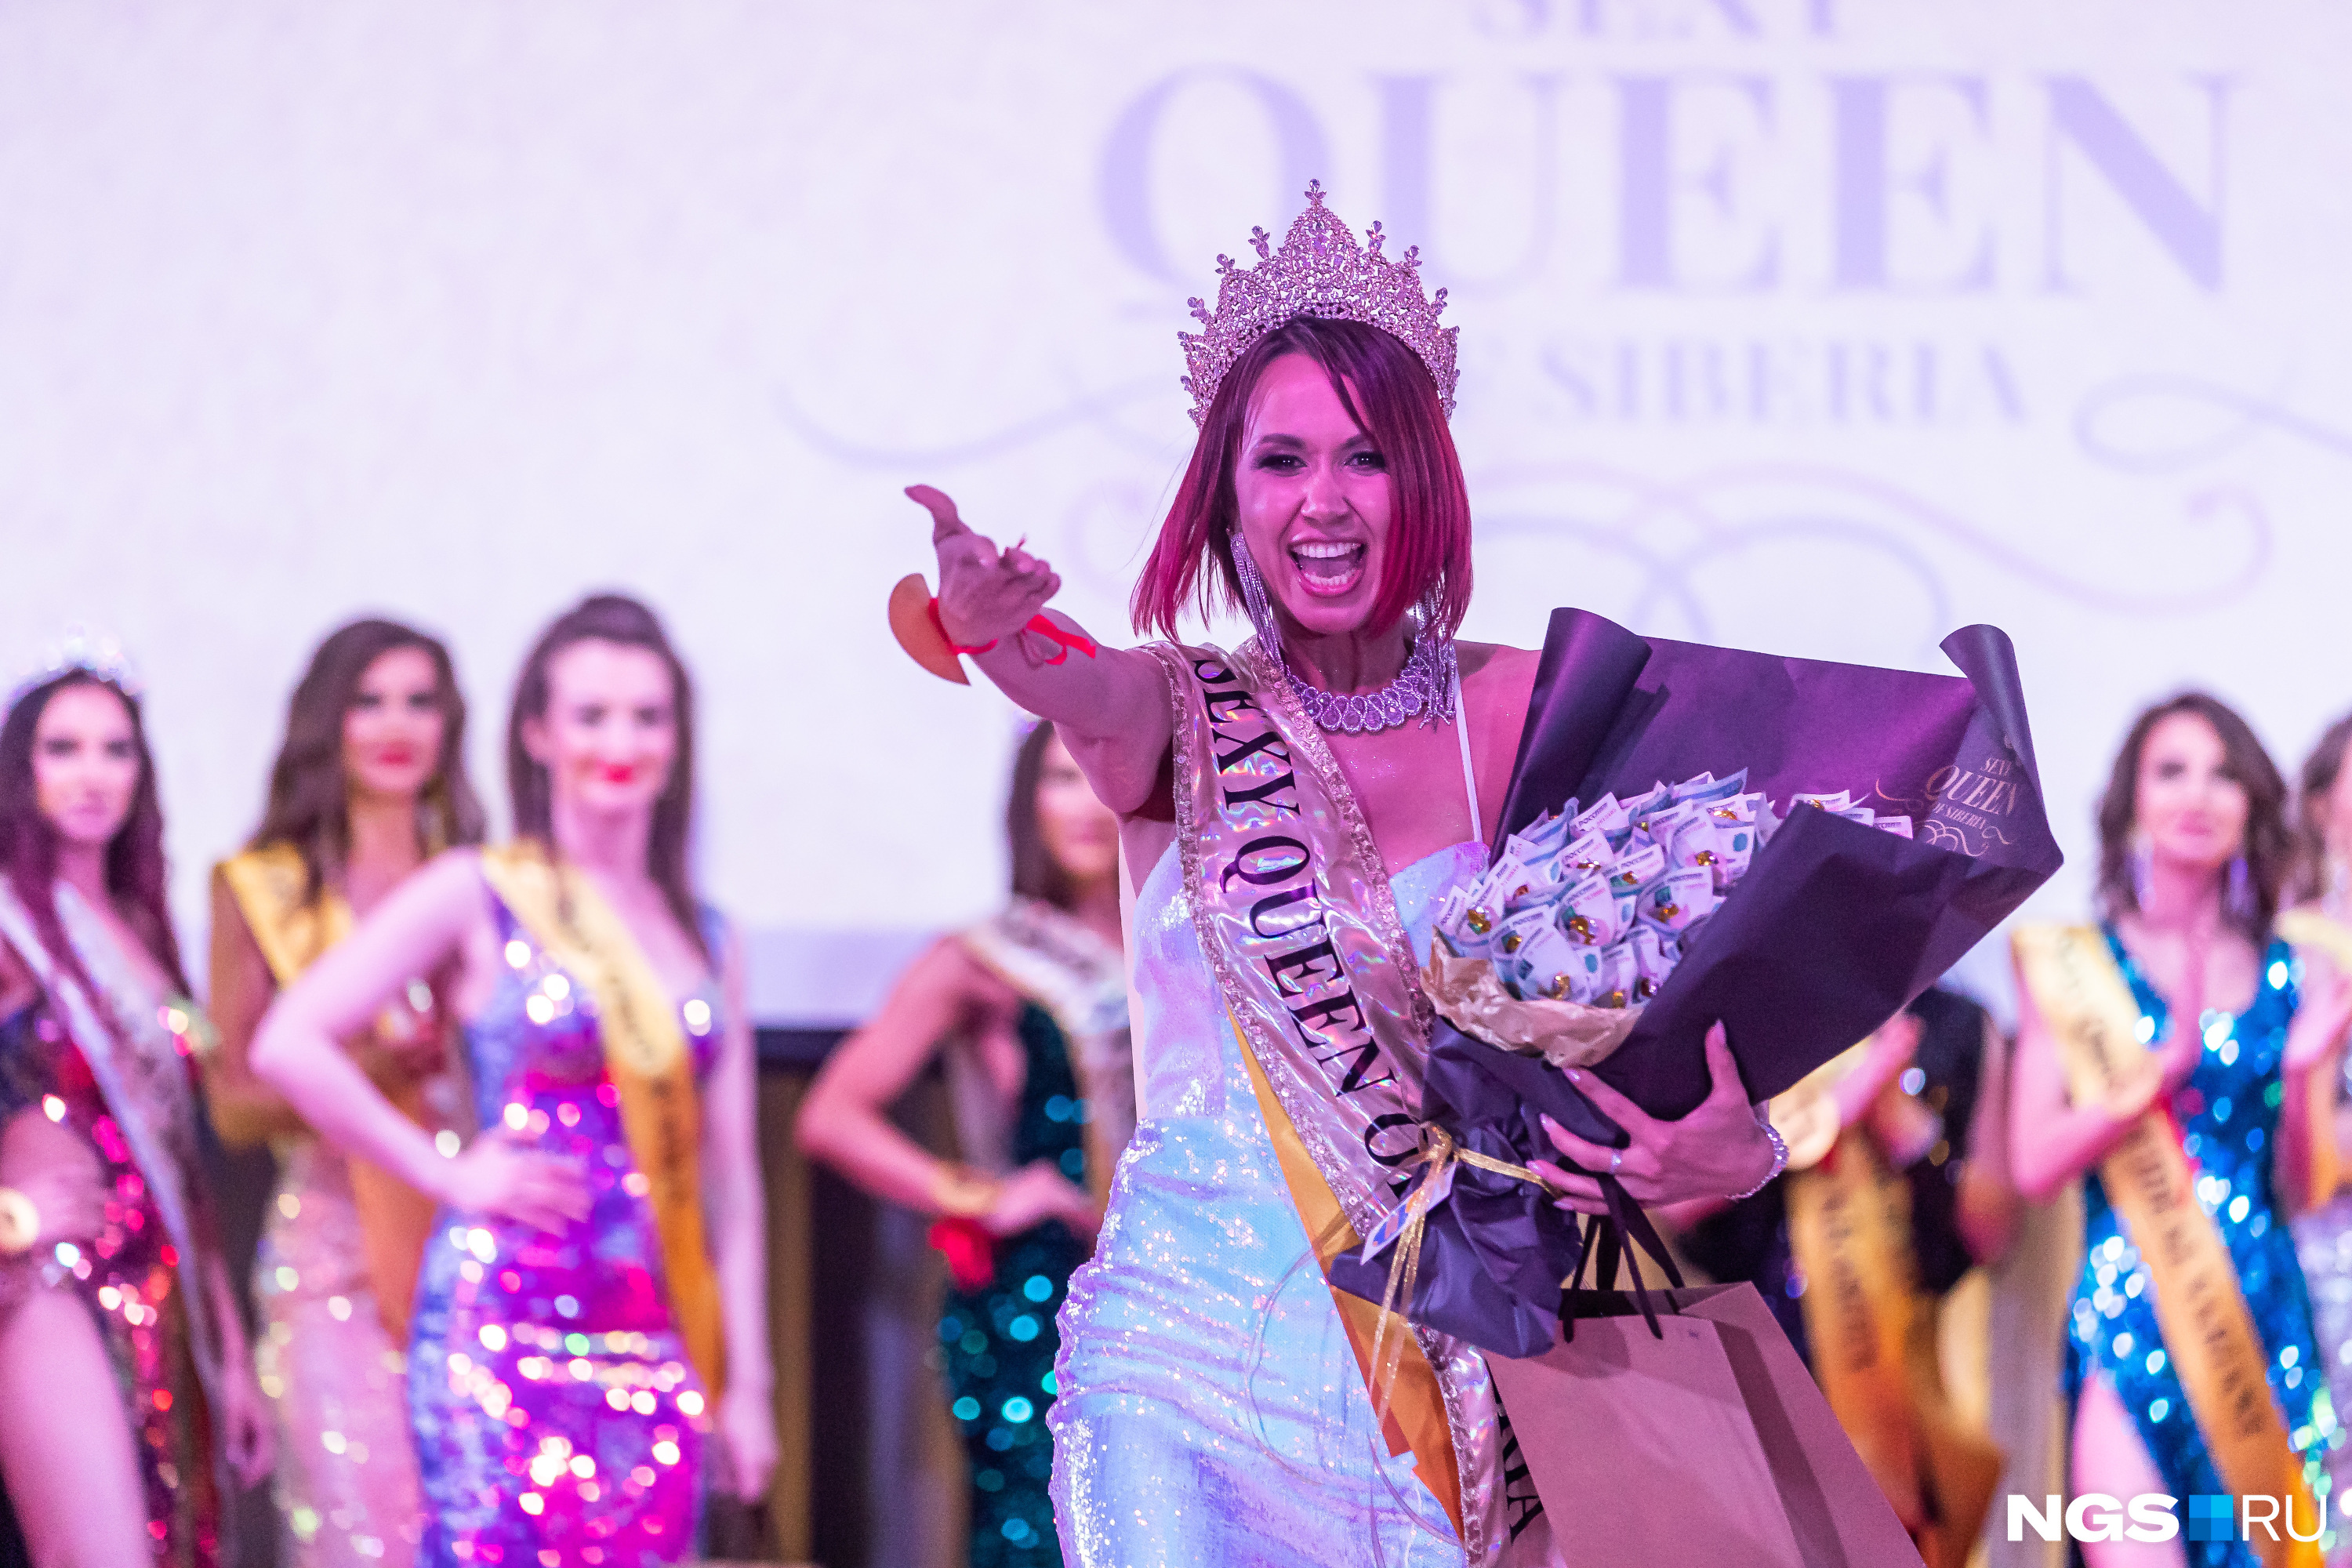 Анна Гетман — победительница конкурса Sexy Queen of Siberia